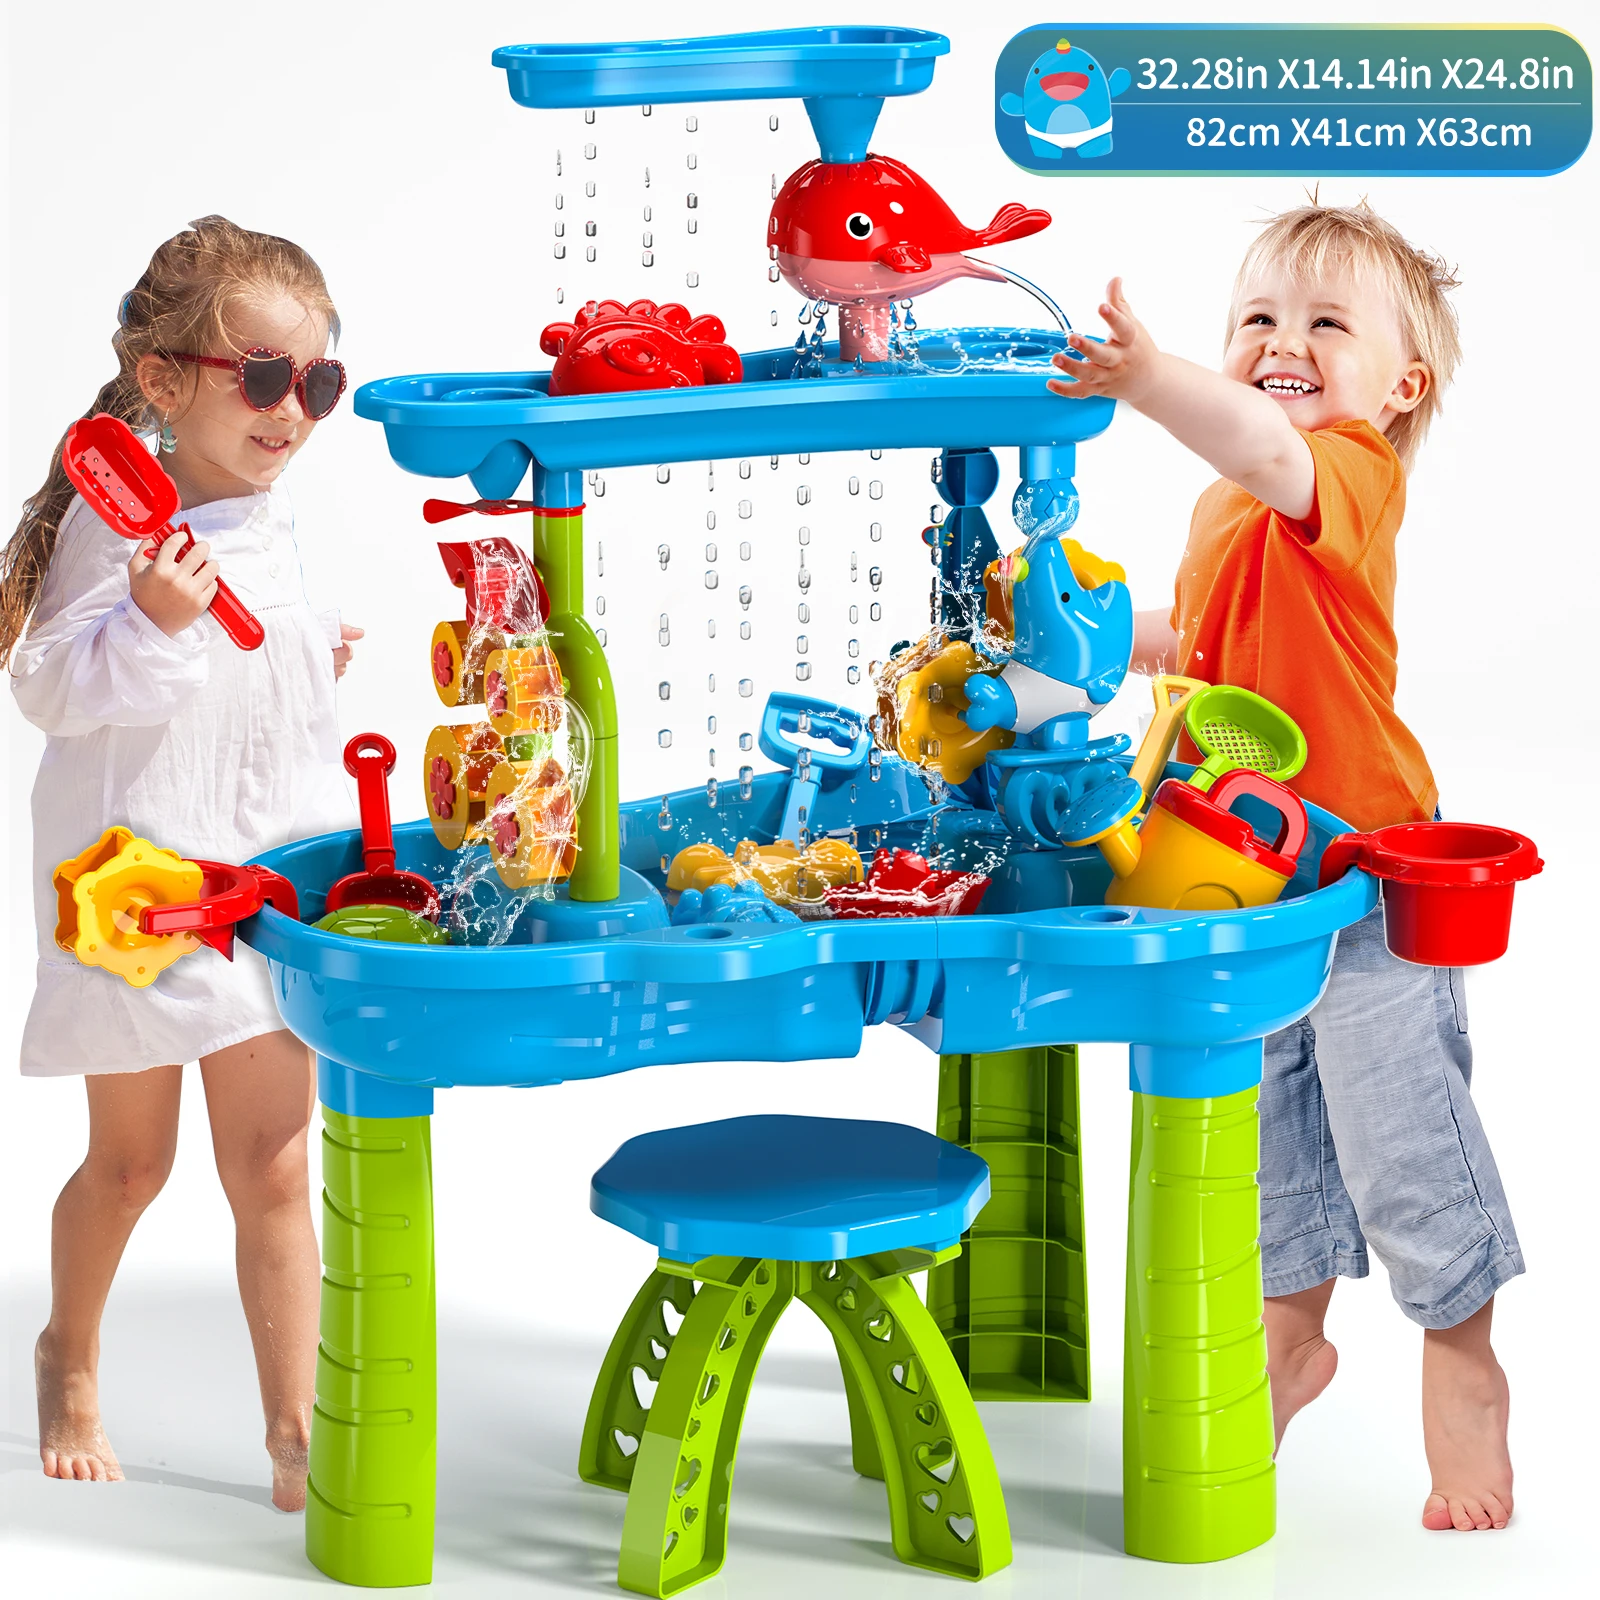 

Children's Beach Toys Outdoor Garden Bunker Set Summer Beach Children DIY Parent-child Interactive Toy Table